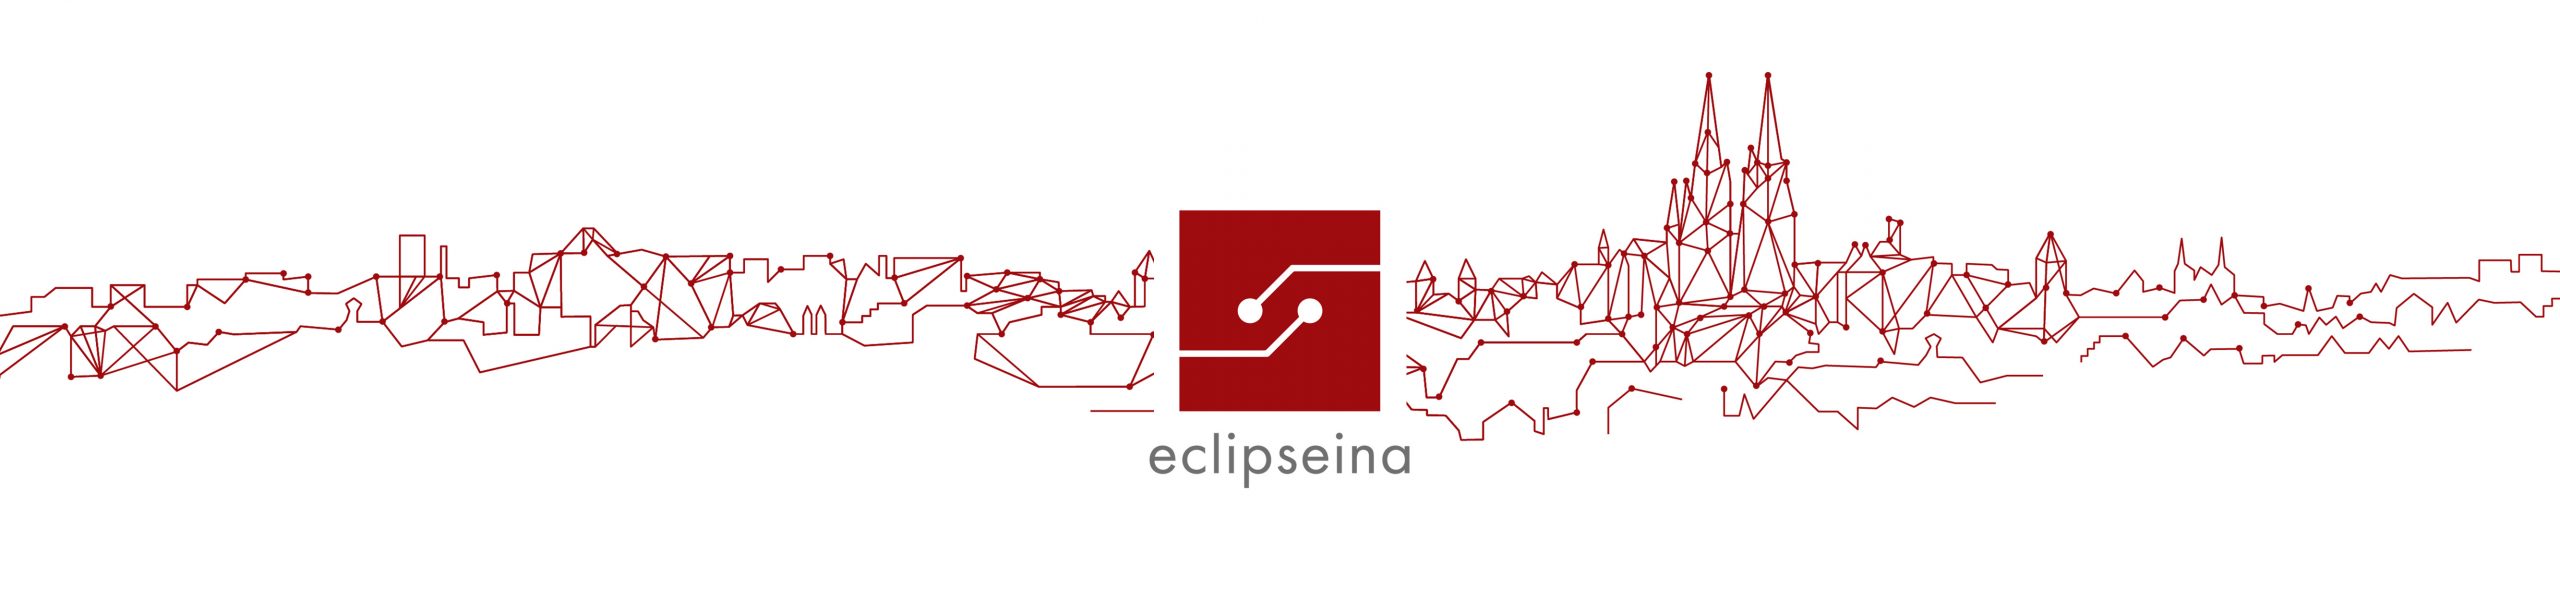 Eclipseina GmbH Logo and Regensburg Graphic